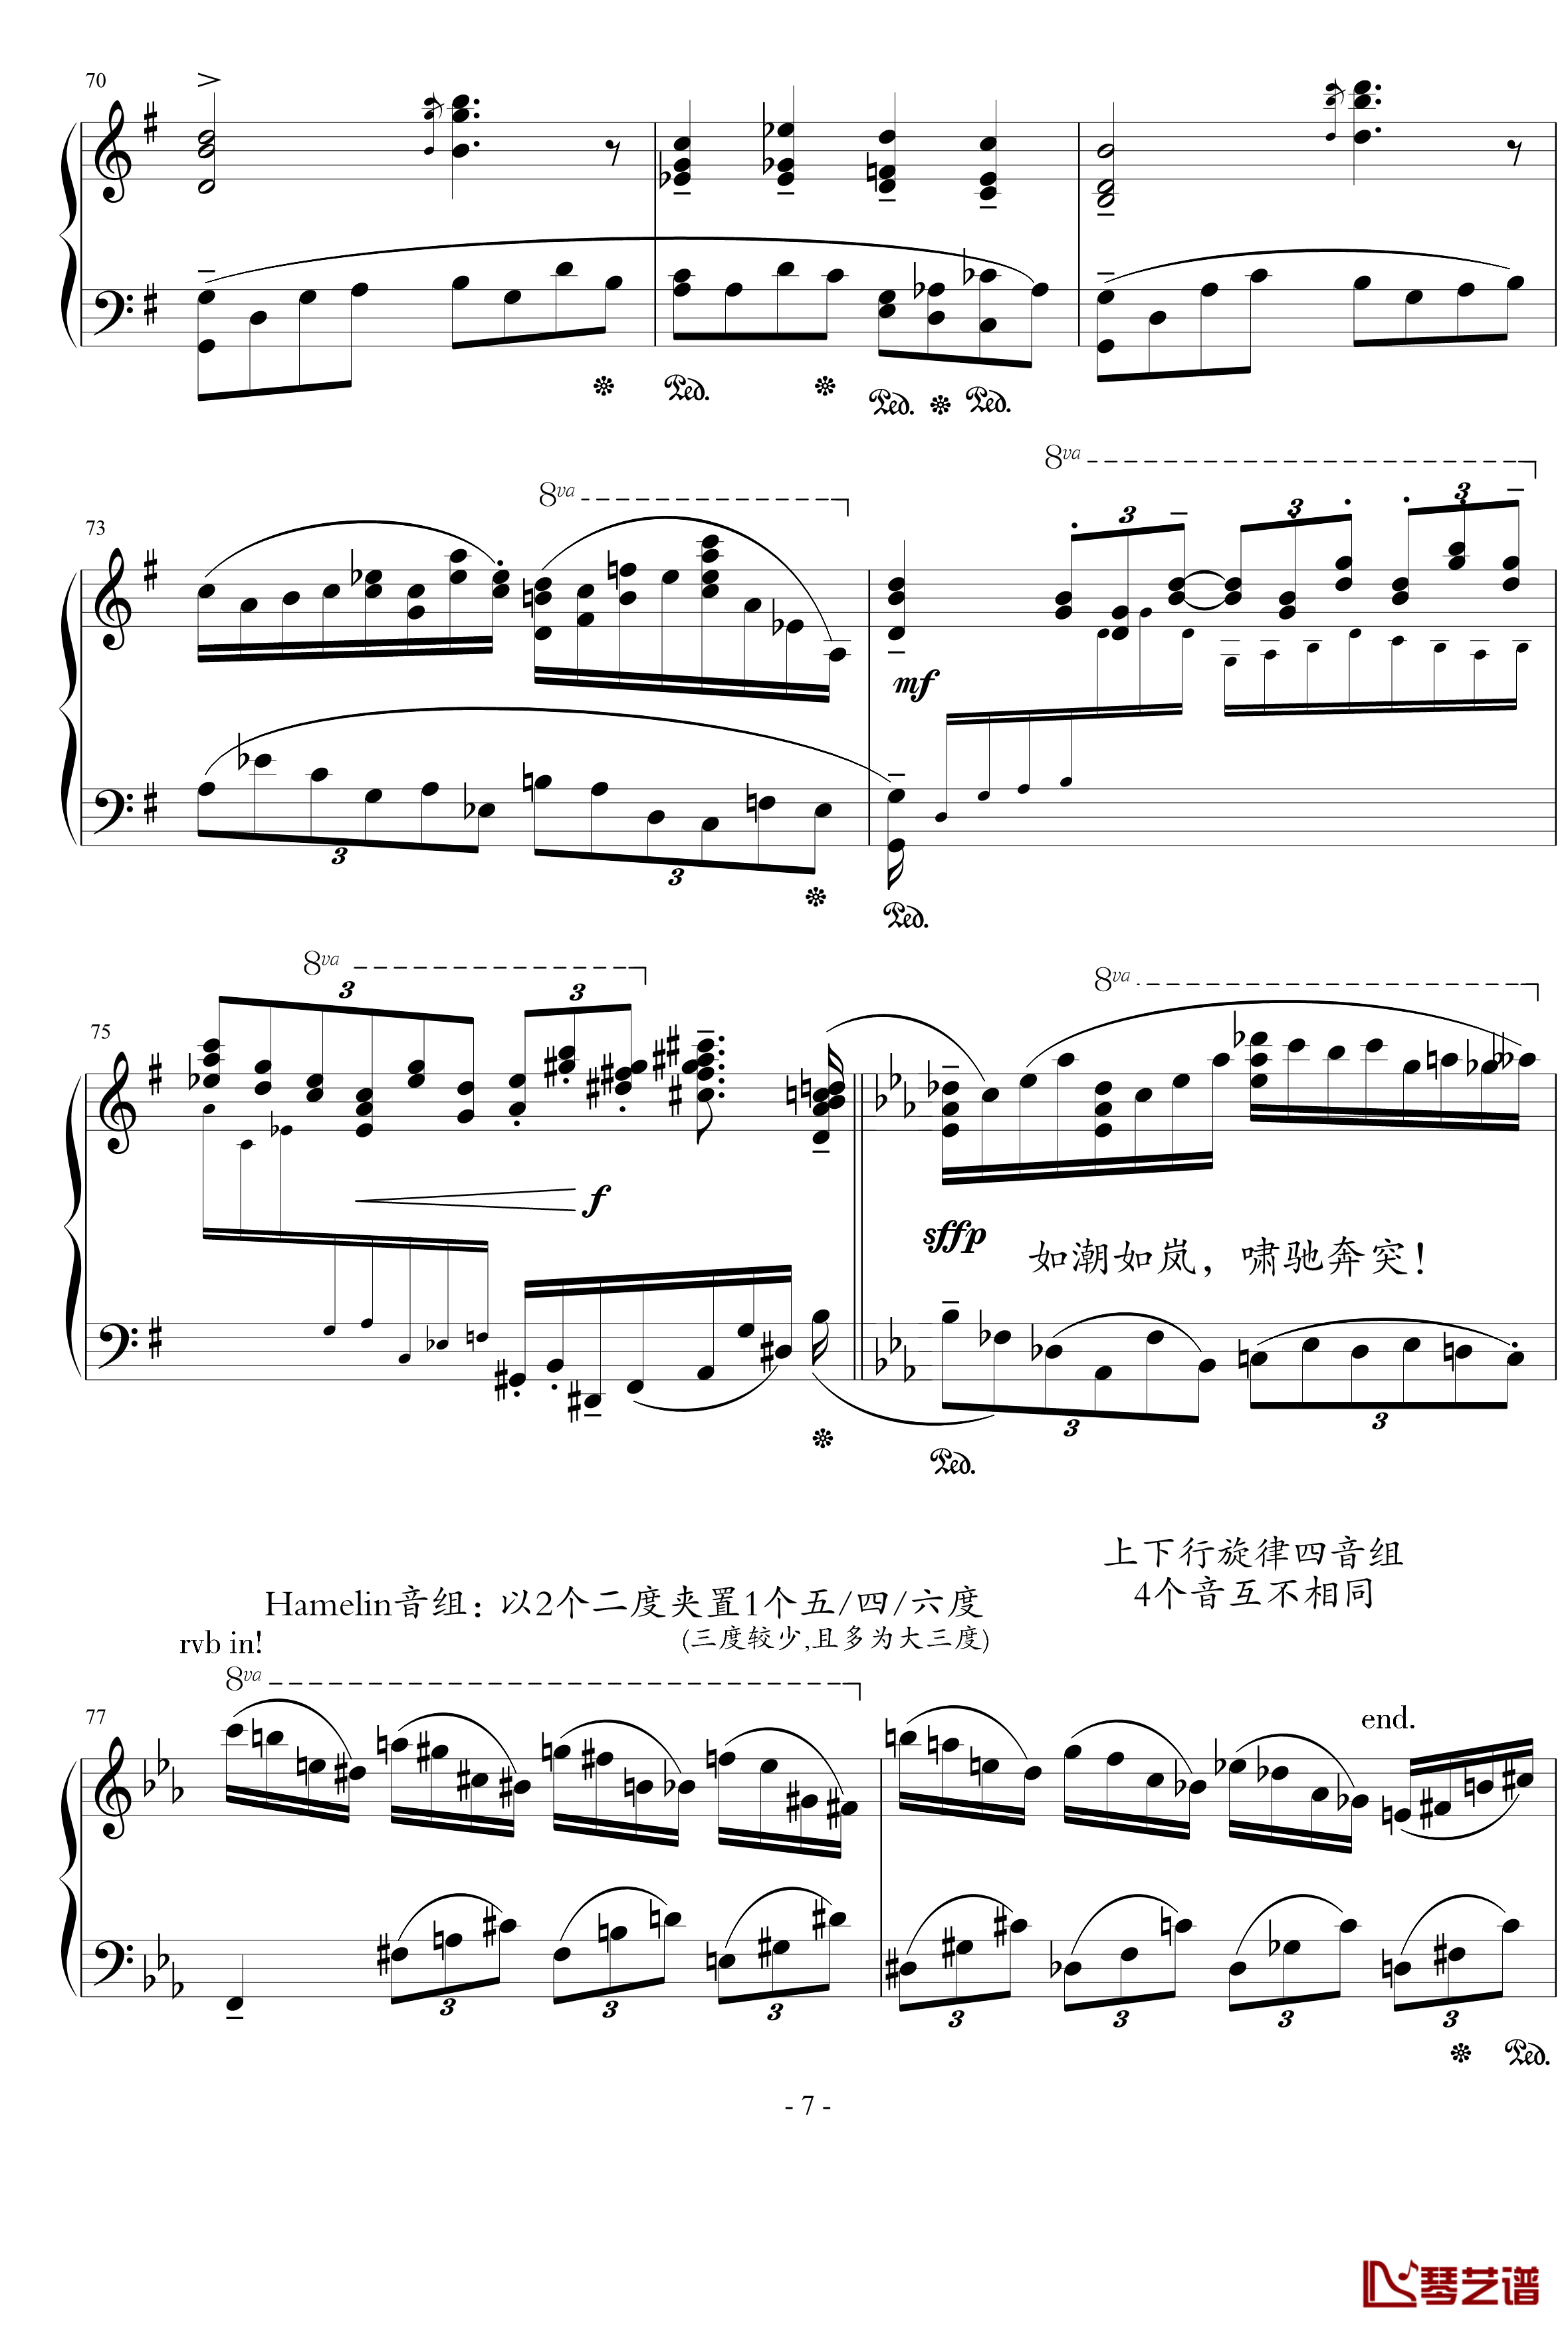  蒙太奇阐释集 钢琴谱-5-流行追梦人7